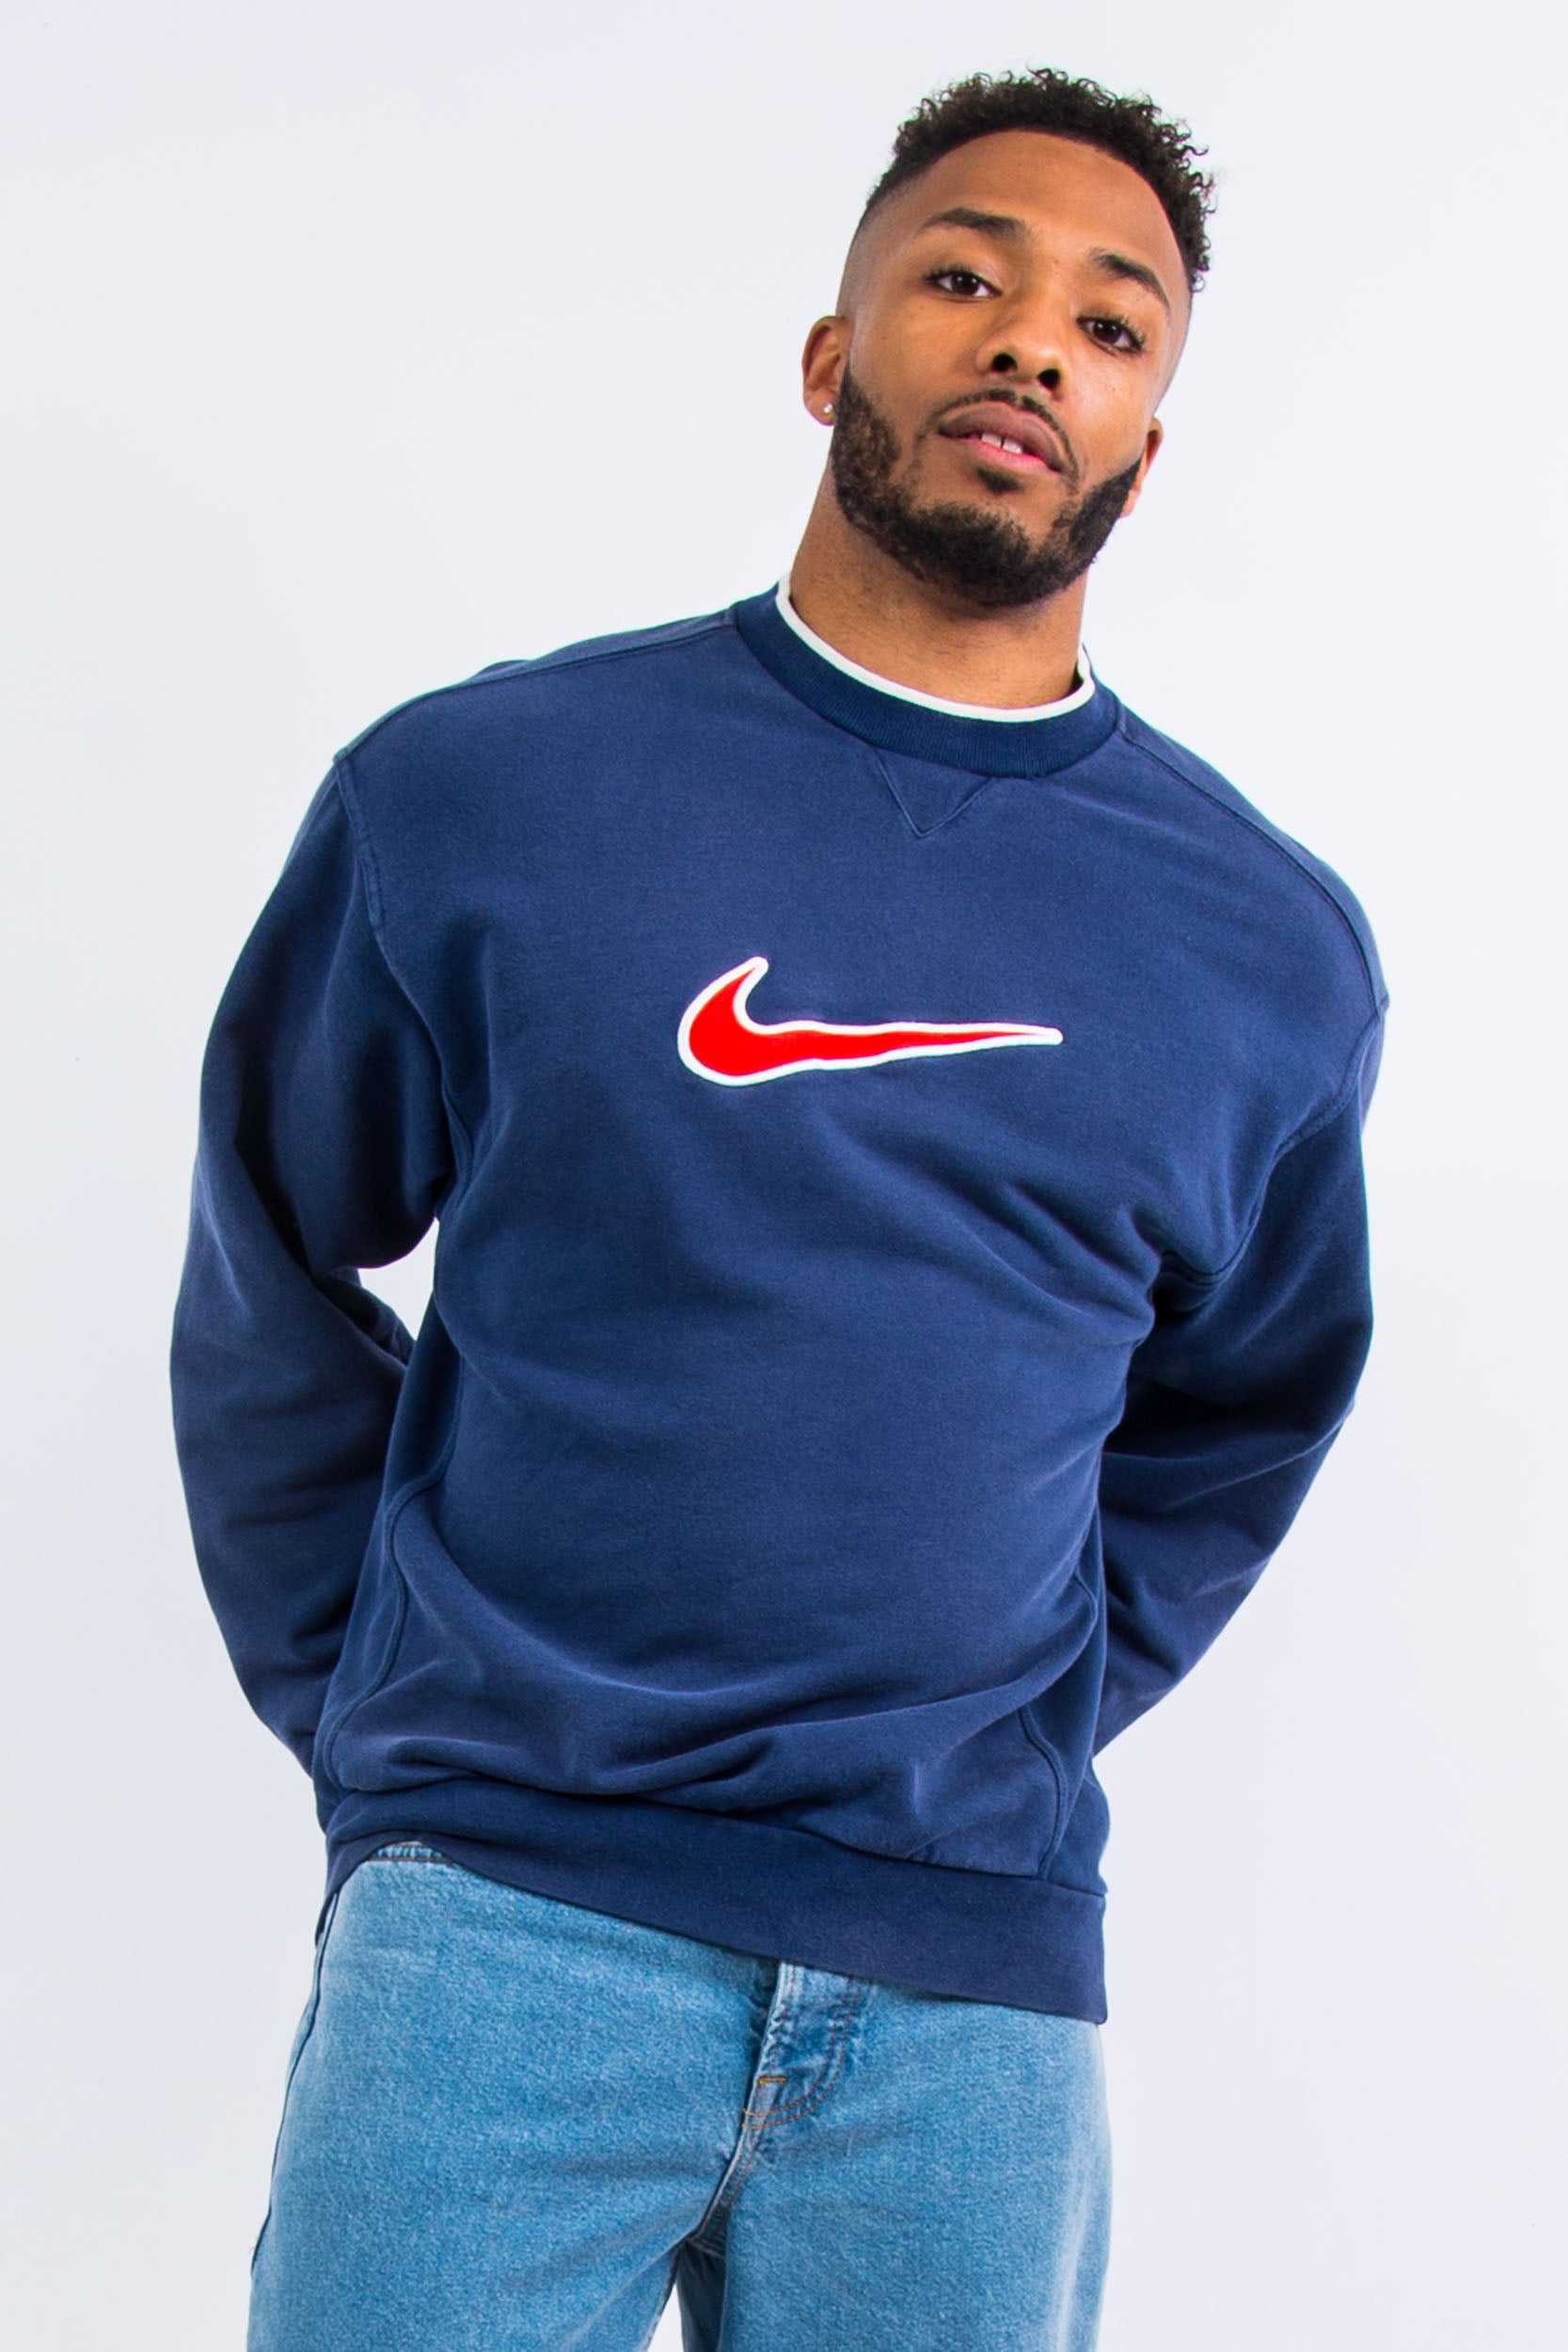 90's Vintage Nike Sweatshirt – The Vintage Scene